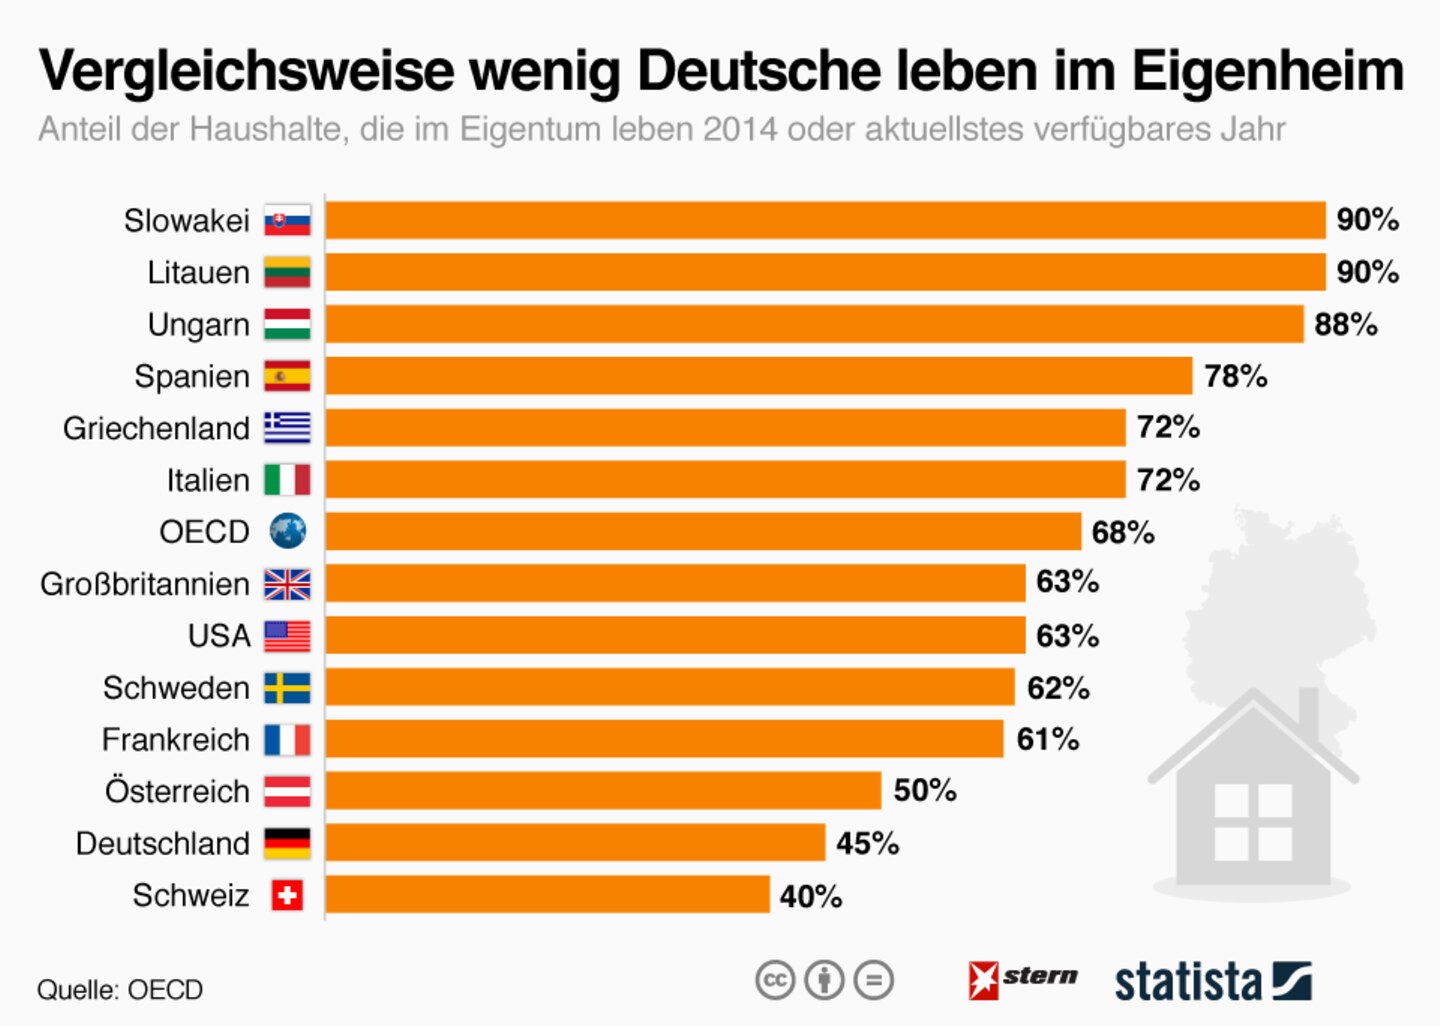 Internationaler Vergleich: So wenige Deutsche leben in den eigenen vier Wänden